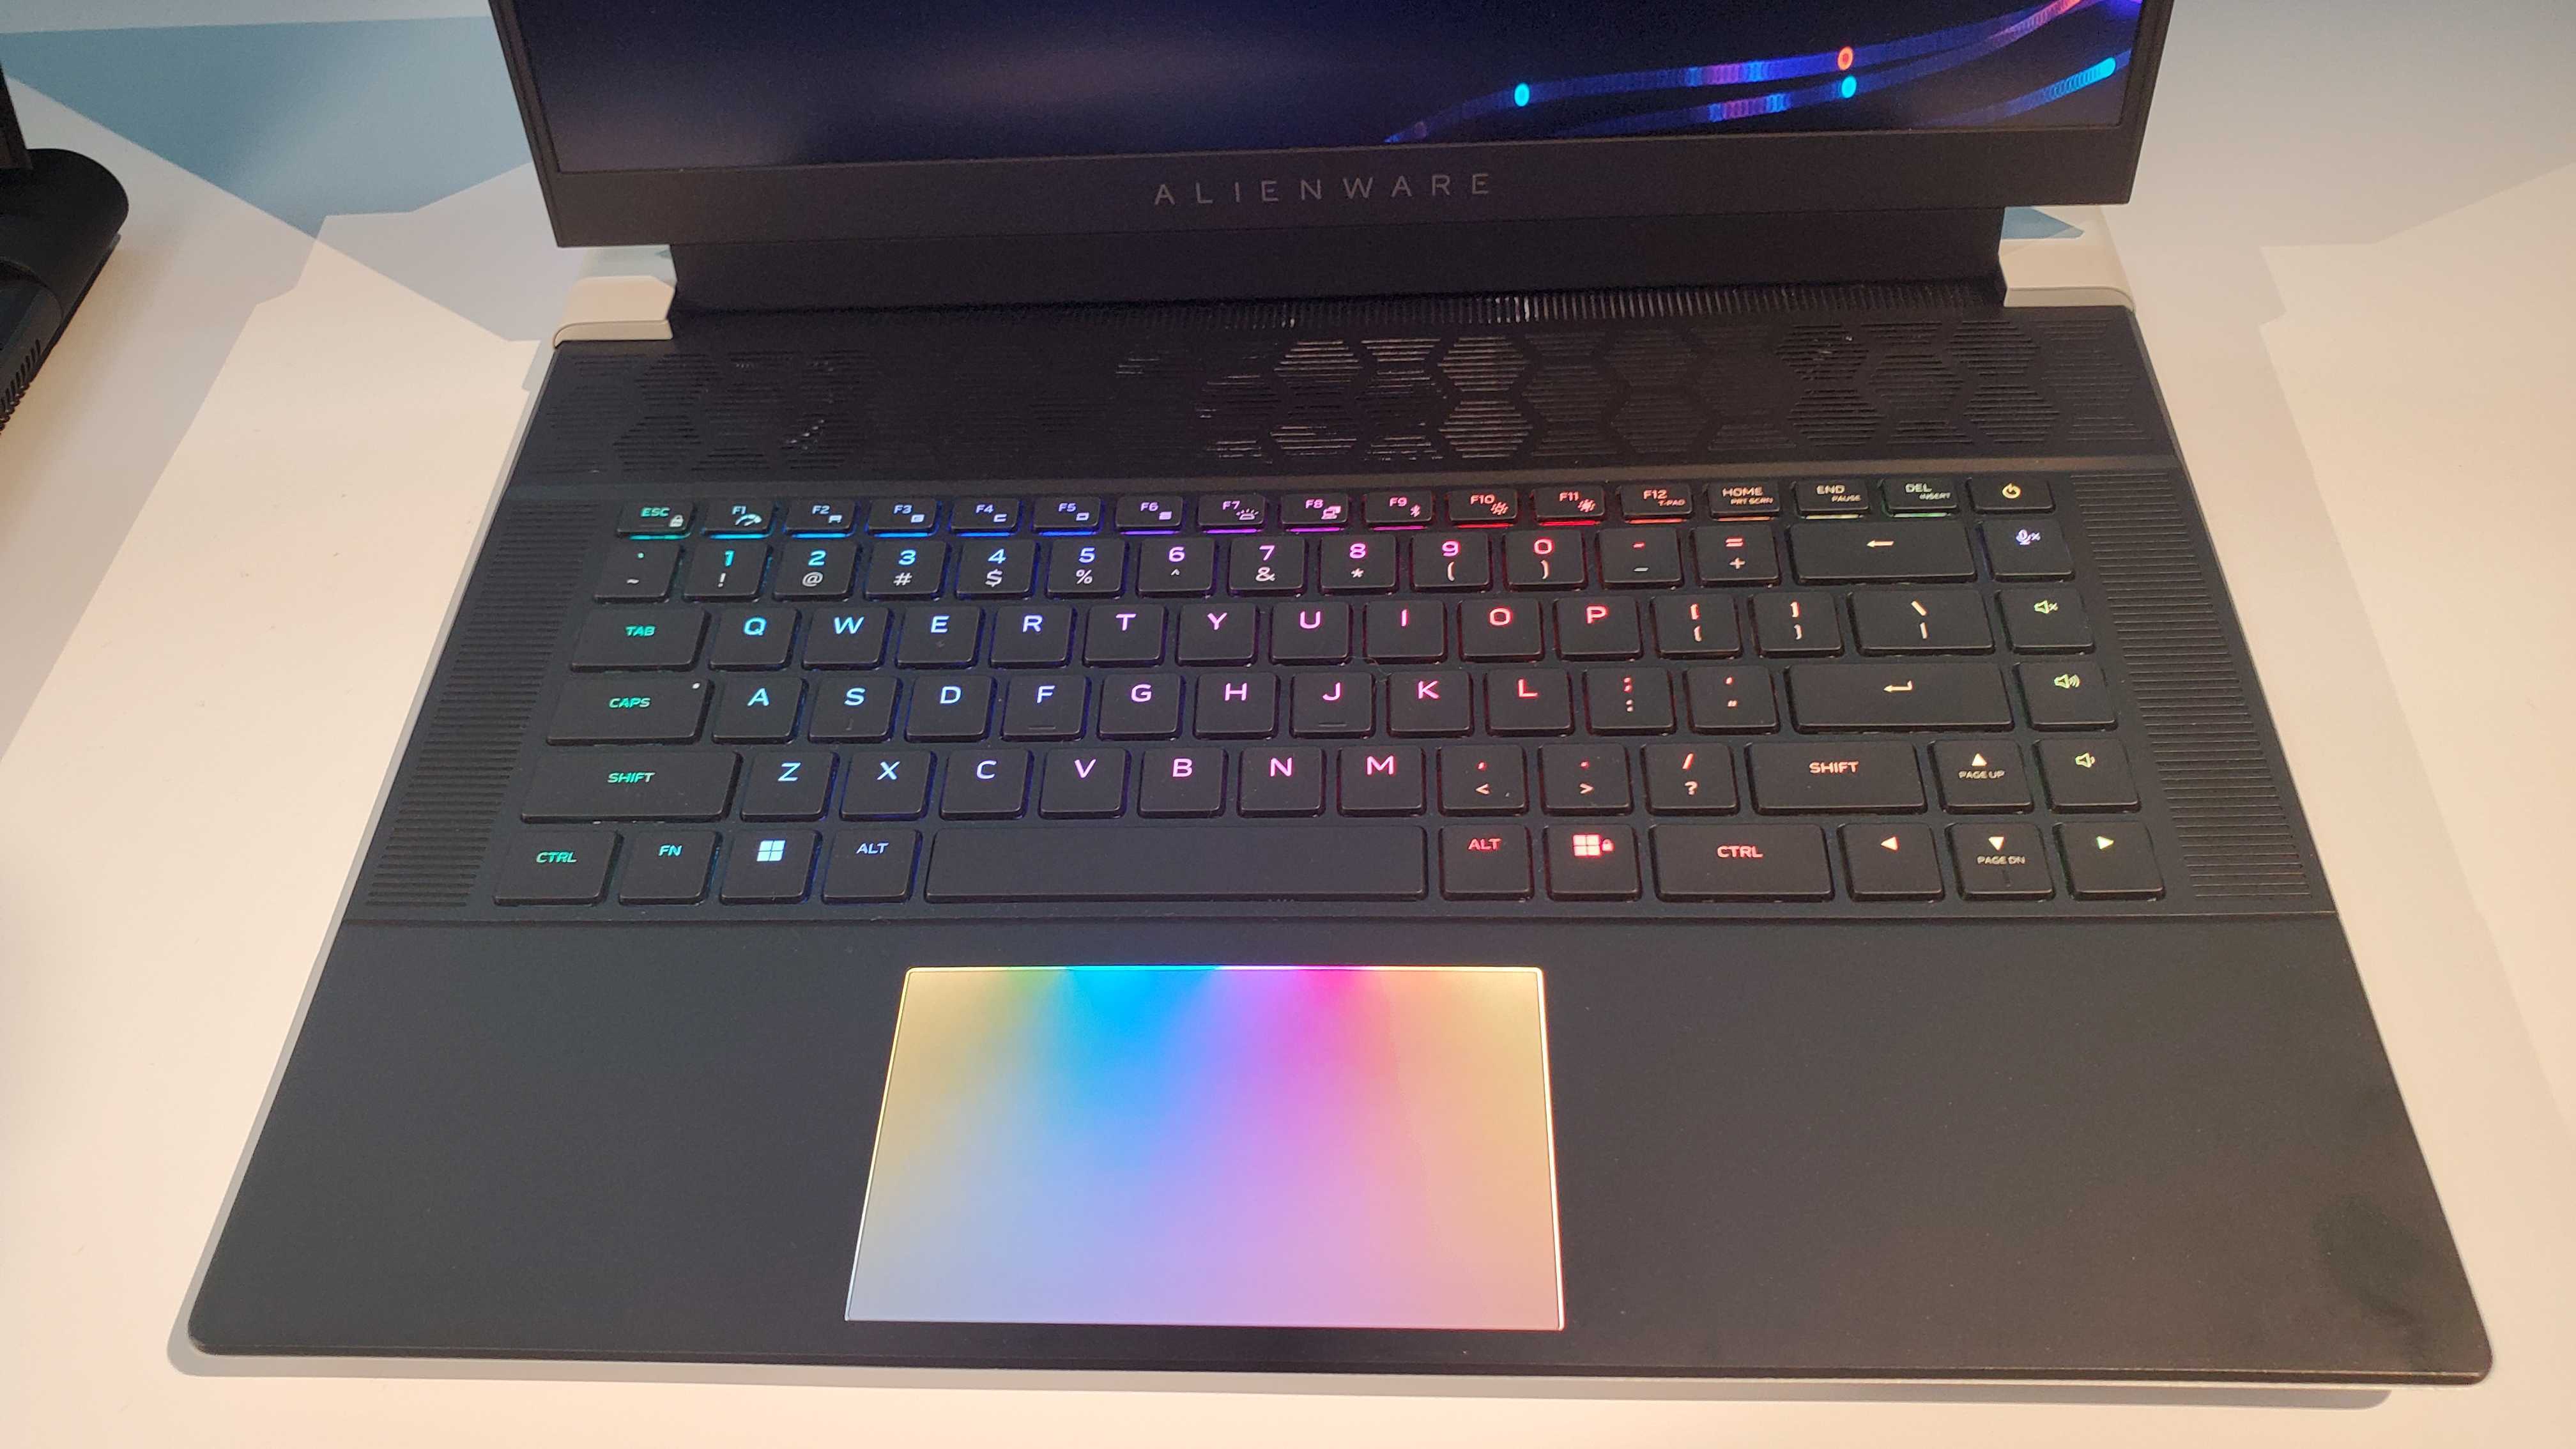 gaming laptop with rgb lit keyboard